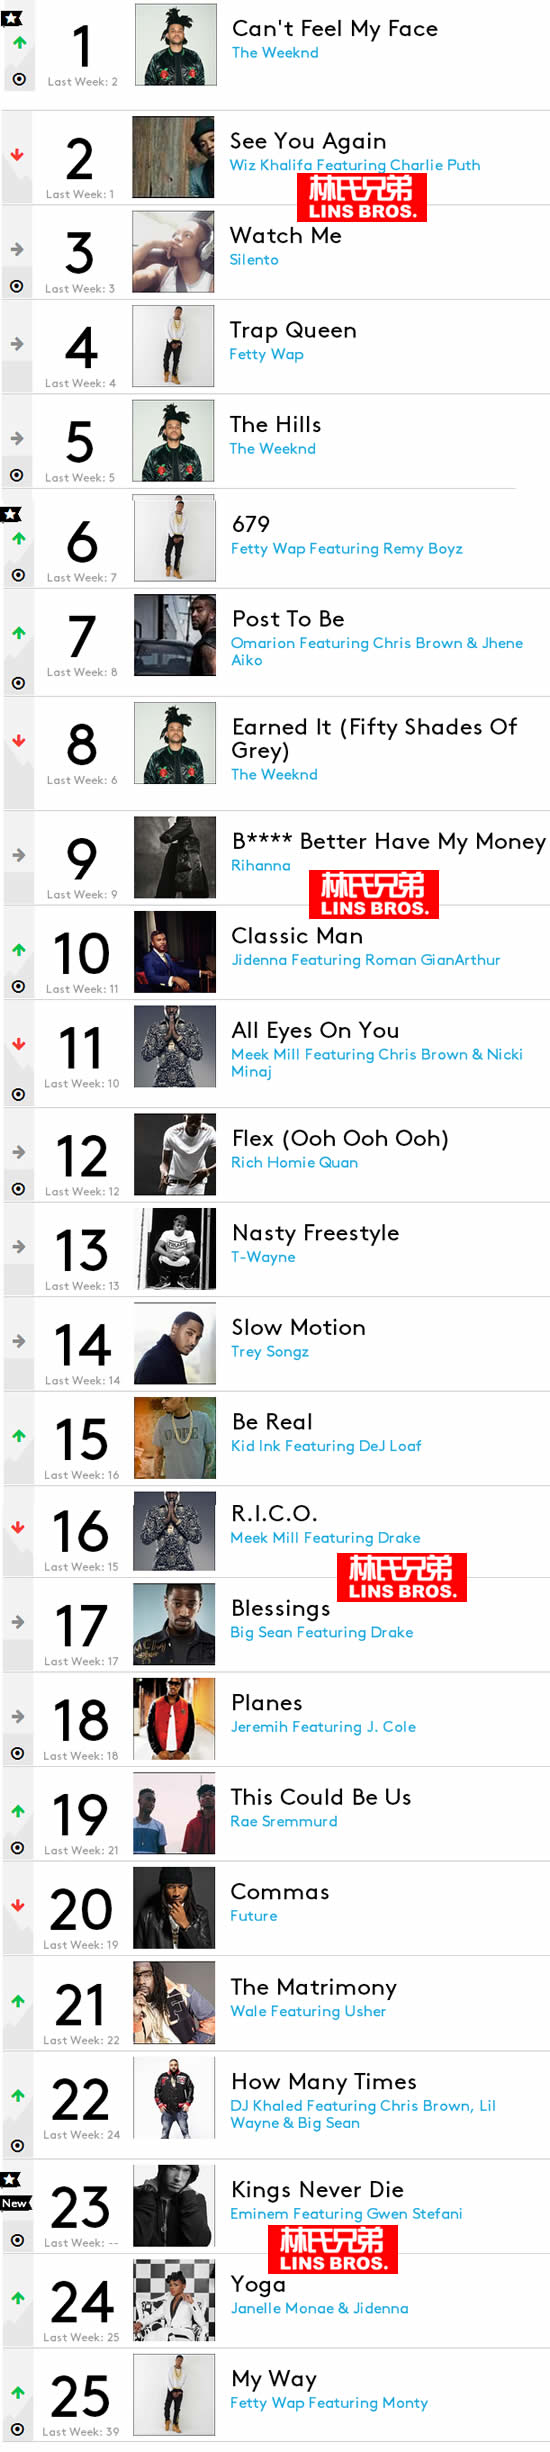 必看榜单! 本周Billboard 前1 25名嘻哈/R&B歌曲榜单..Eminem歌曲本周杀进榜单